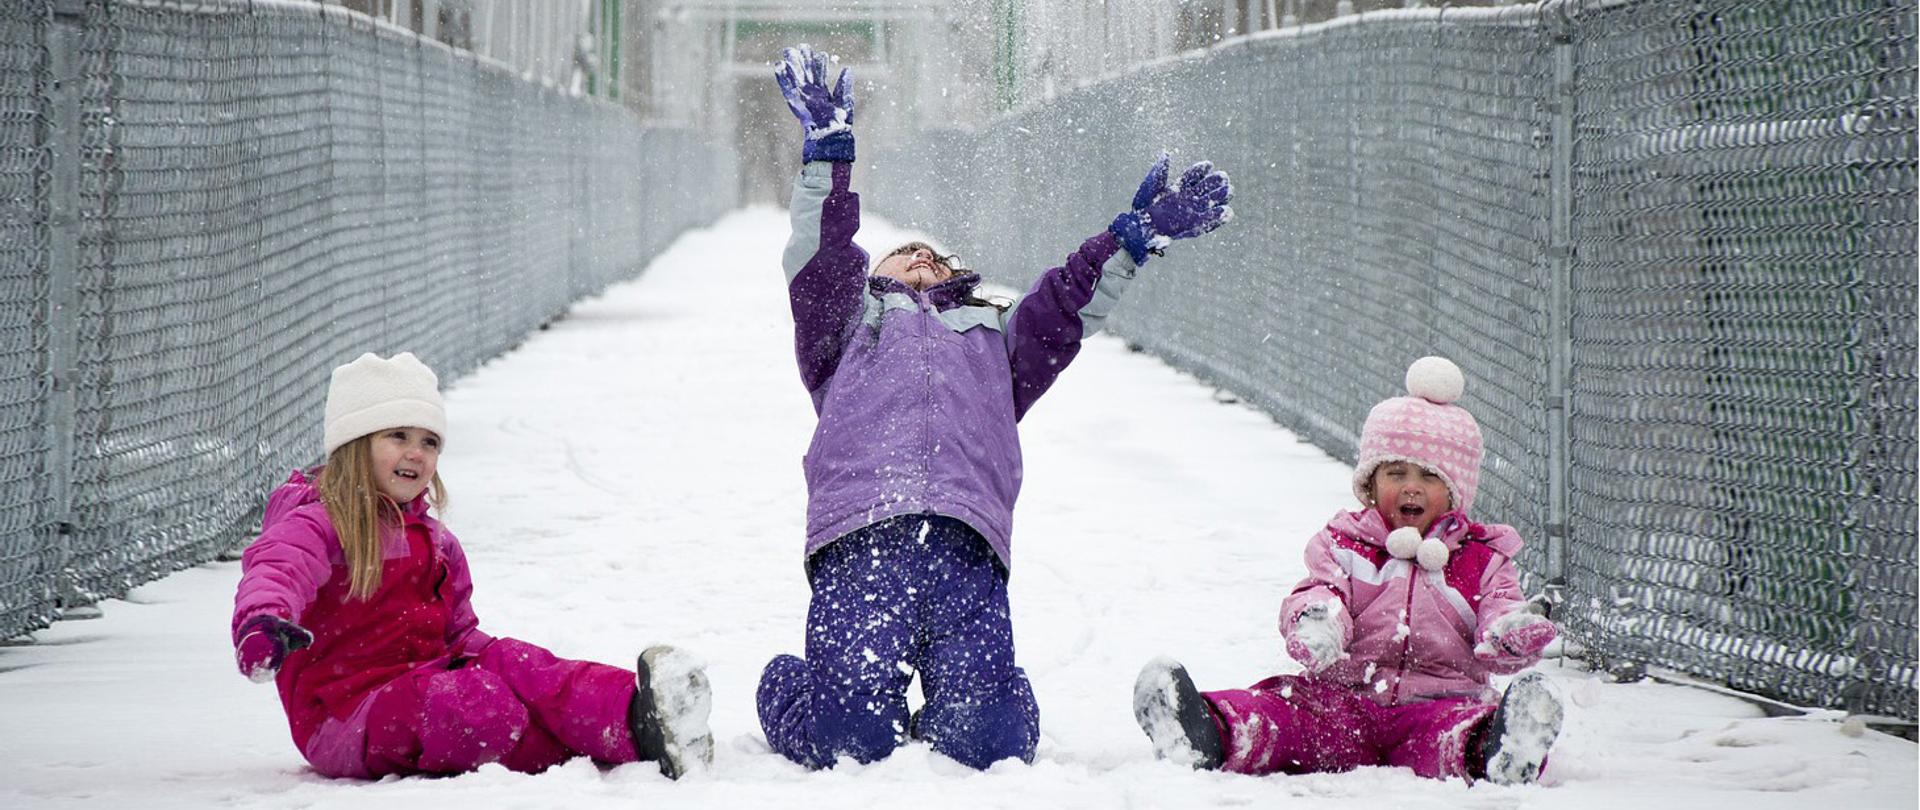 Troje dzieci w zimowych strojach bawią się na śniegu.